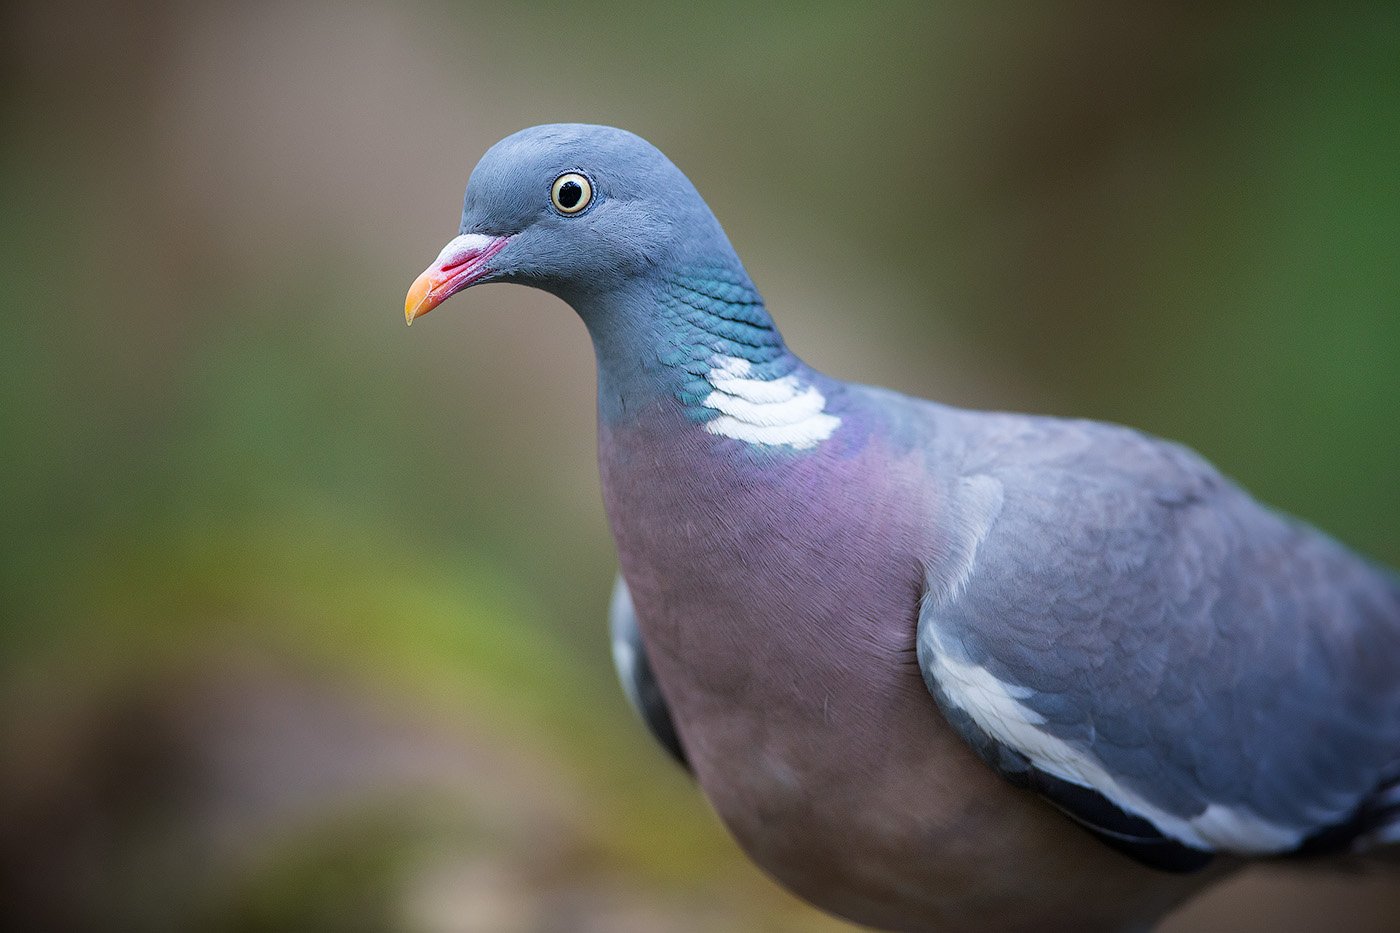 pigeon, wood pigeon, bird, wildlife, вяхирь, голубь, портрет, птицы, Голубев Дмитрий